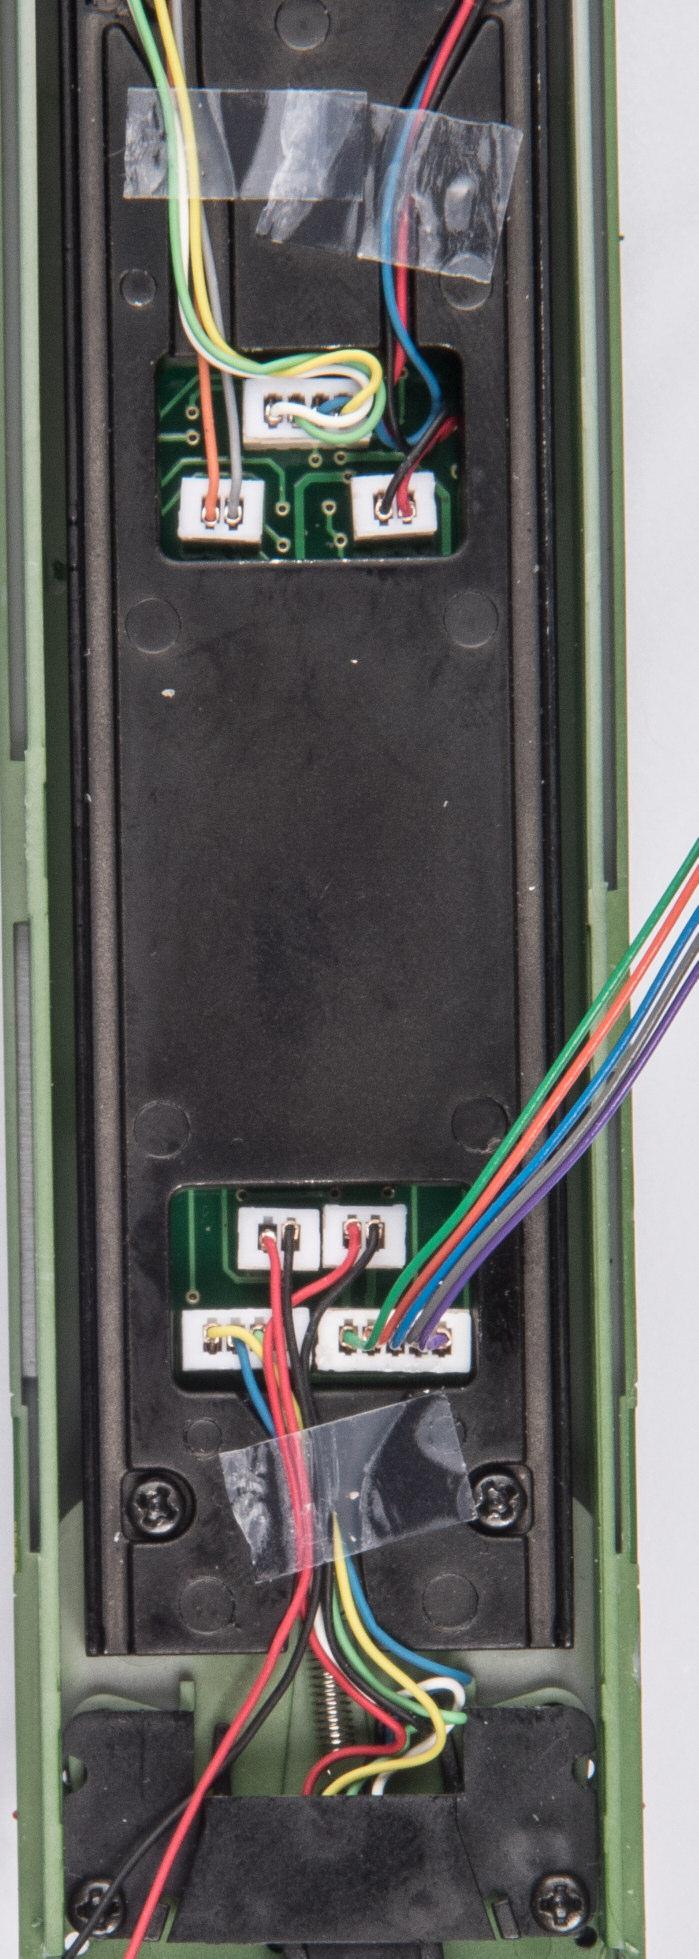 Passo 5 Riagganciare tutti i connettori e riposizionare adeguatamente i cablaggi lungo le guide predisposte sul telaio metallico.